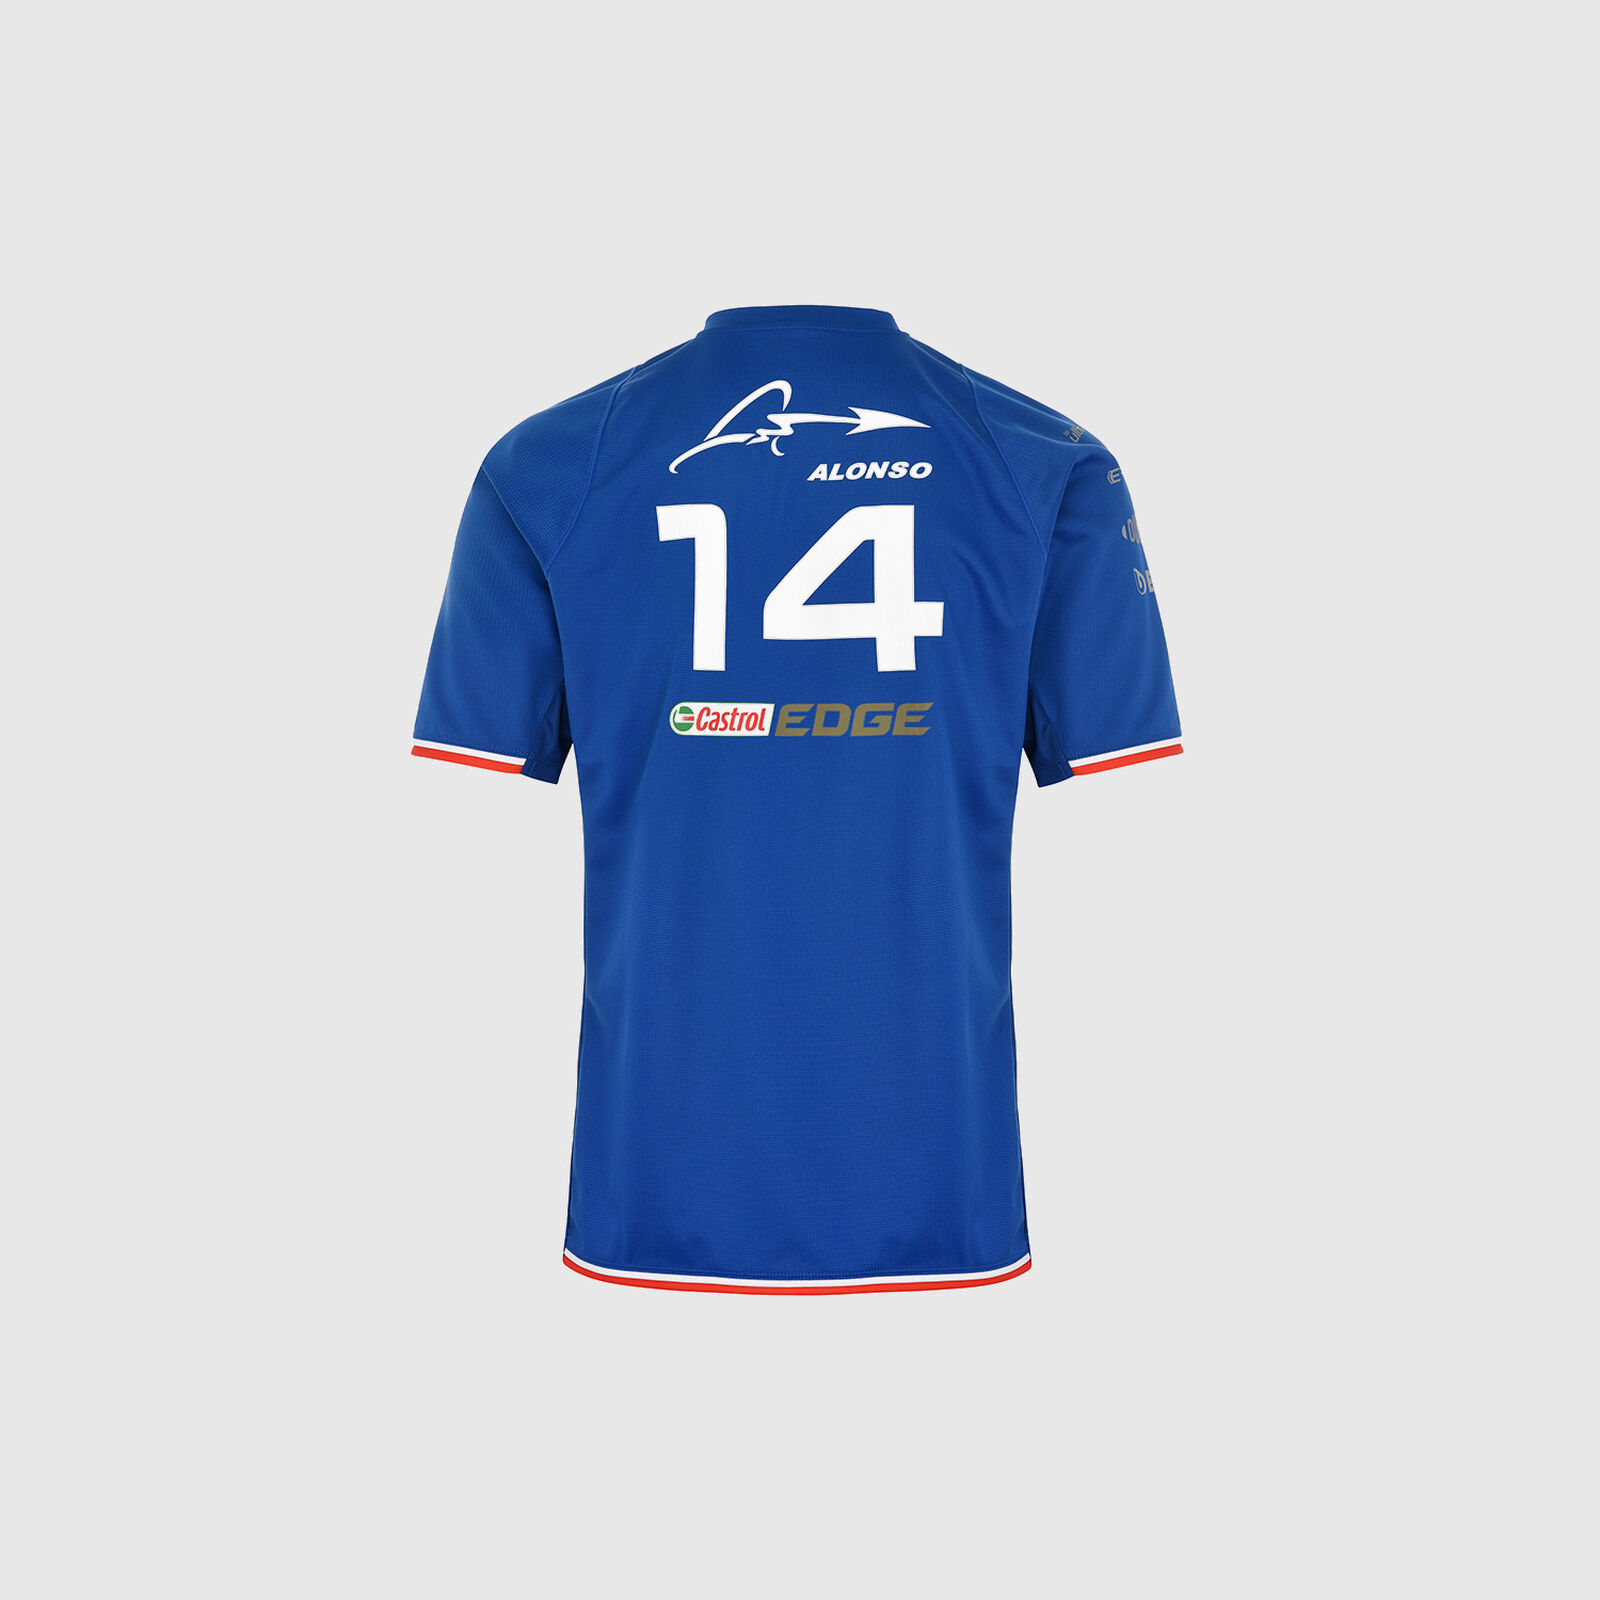 Camiseta del equipo Fernando Alonso 2022 - Alpine F1